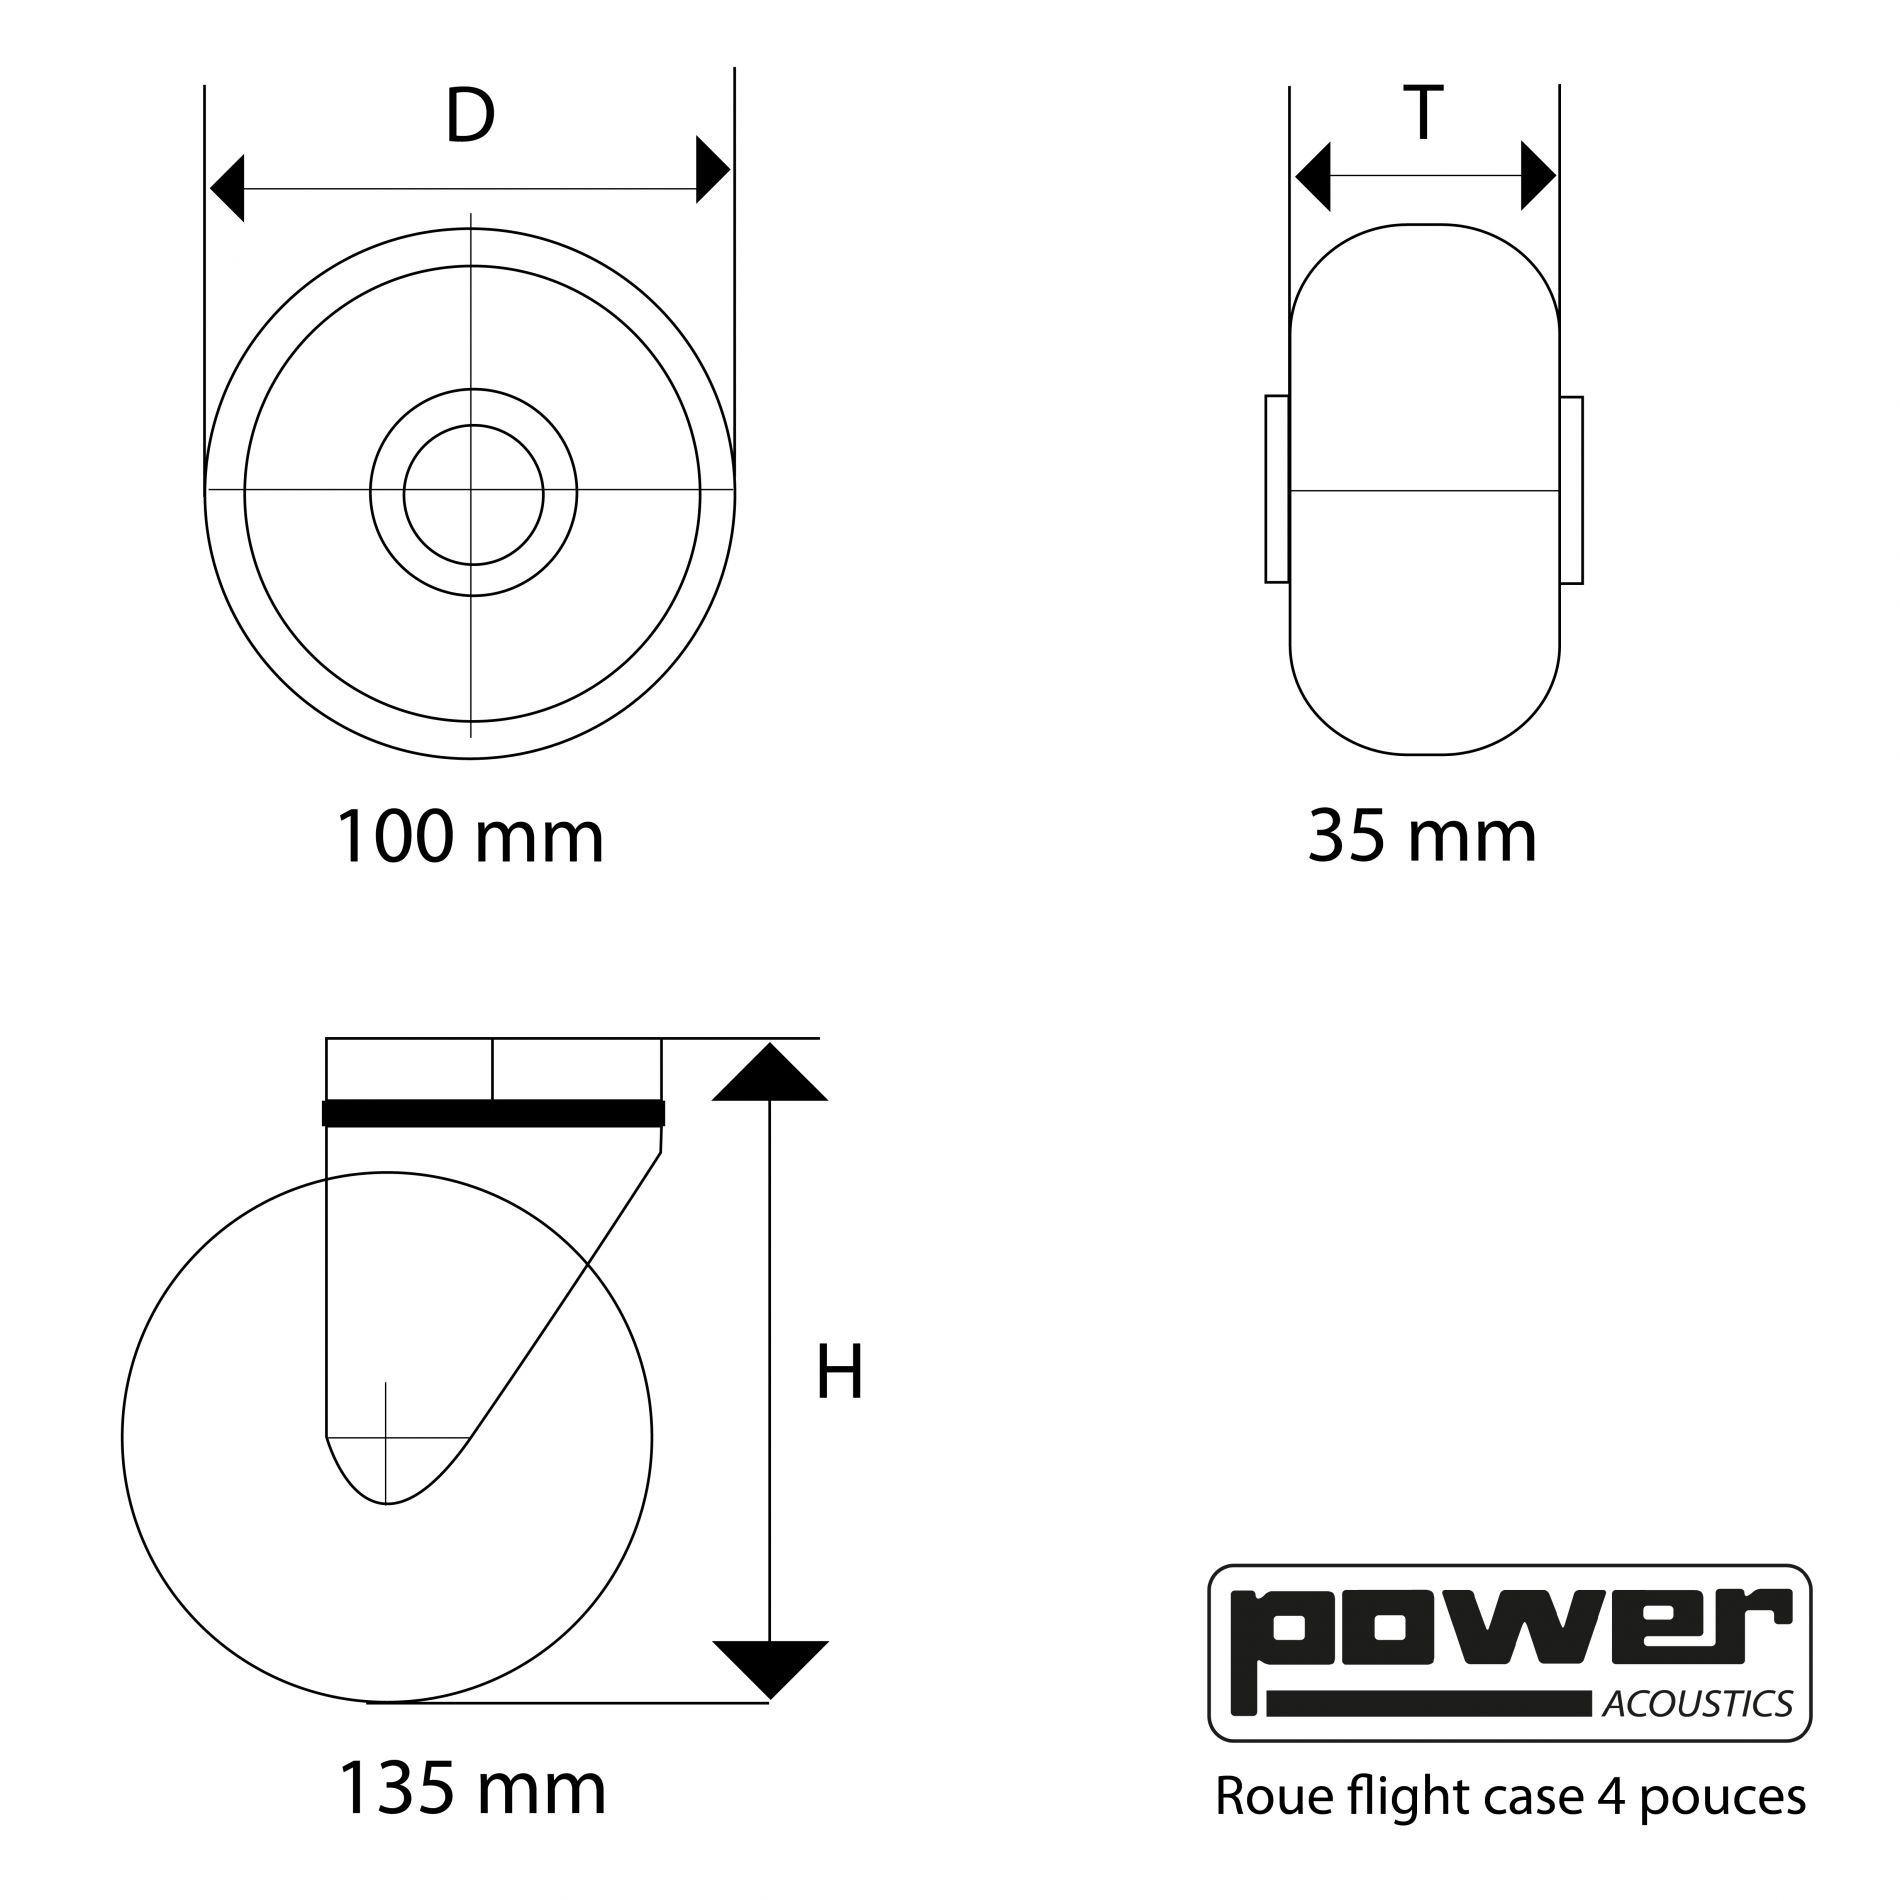 Power Acoustics Roue Flight Case 4 Pouces - - Estuche y flightcase para luces - Variation 2